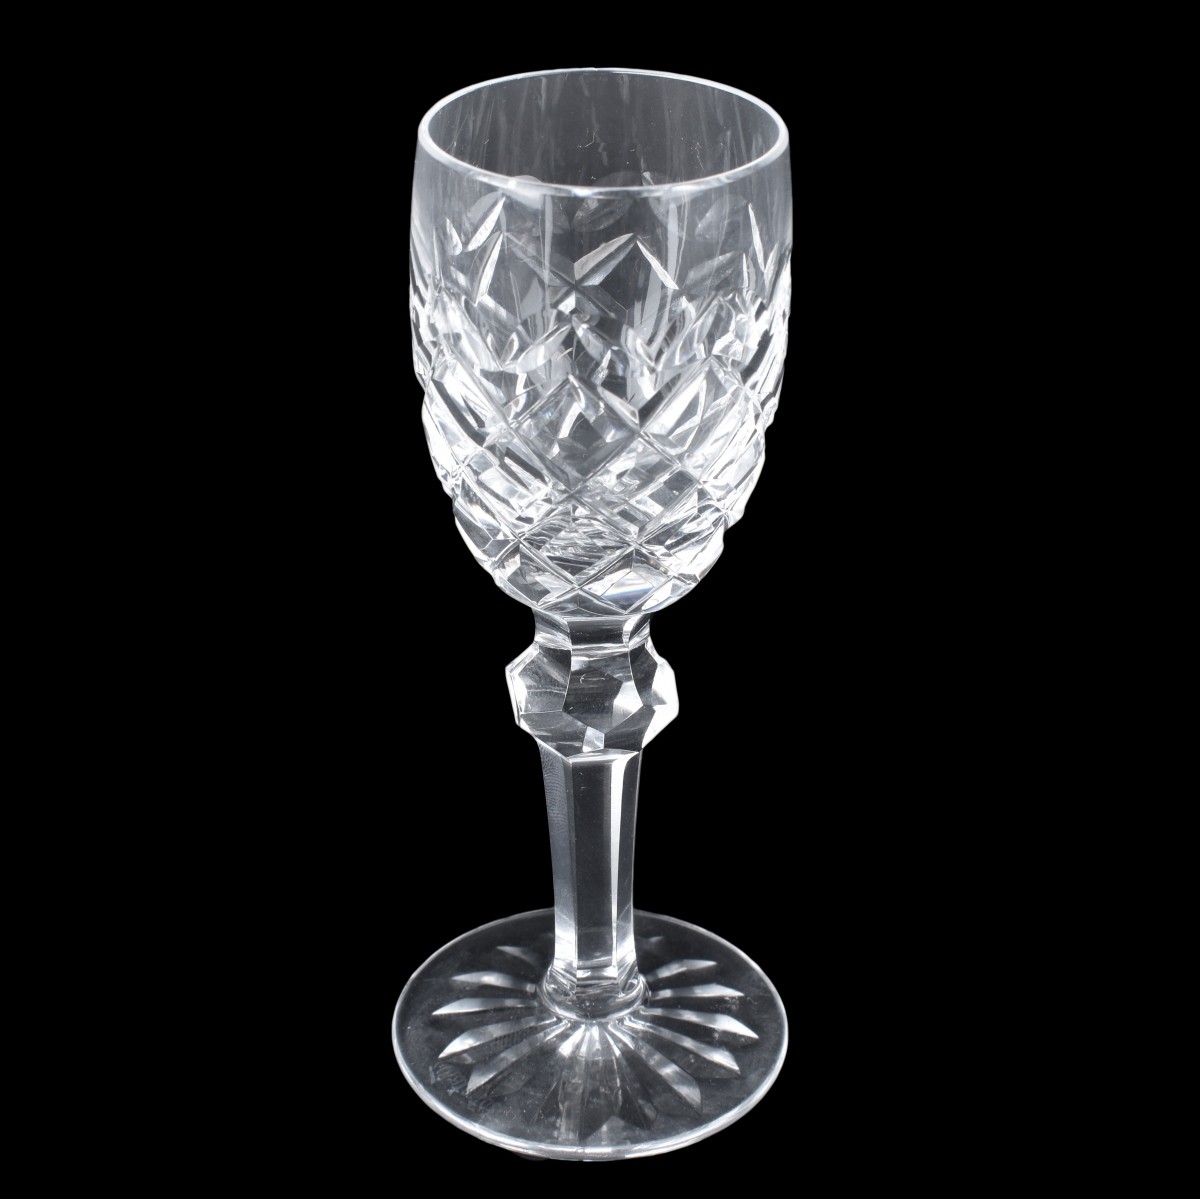 Sixteen Waterford Crystal Tableware